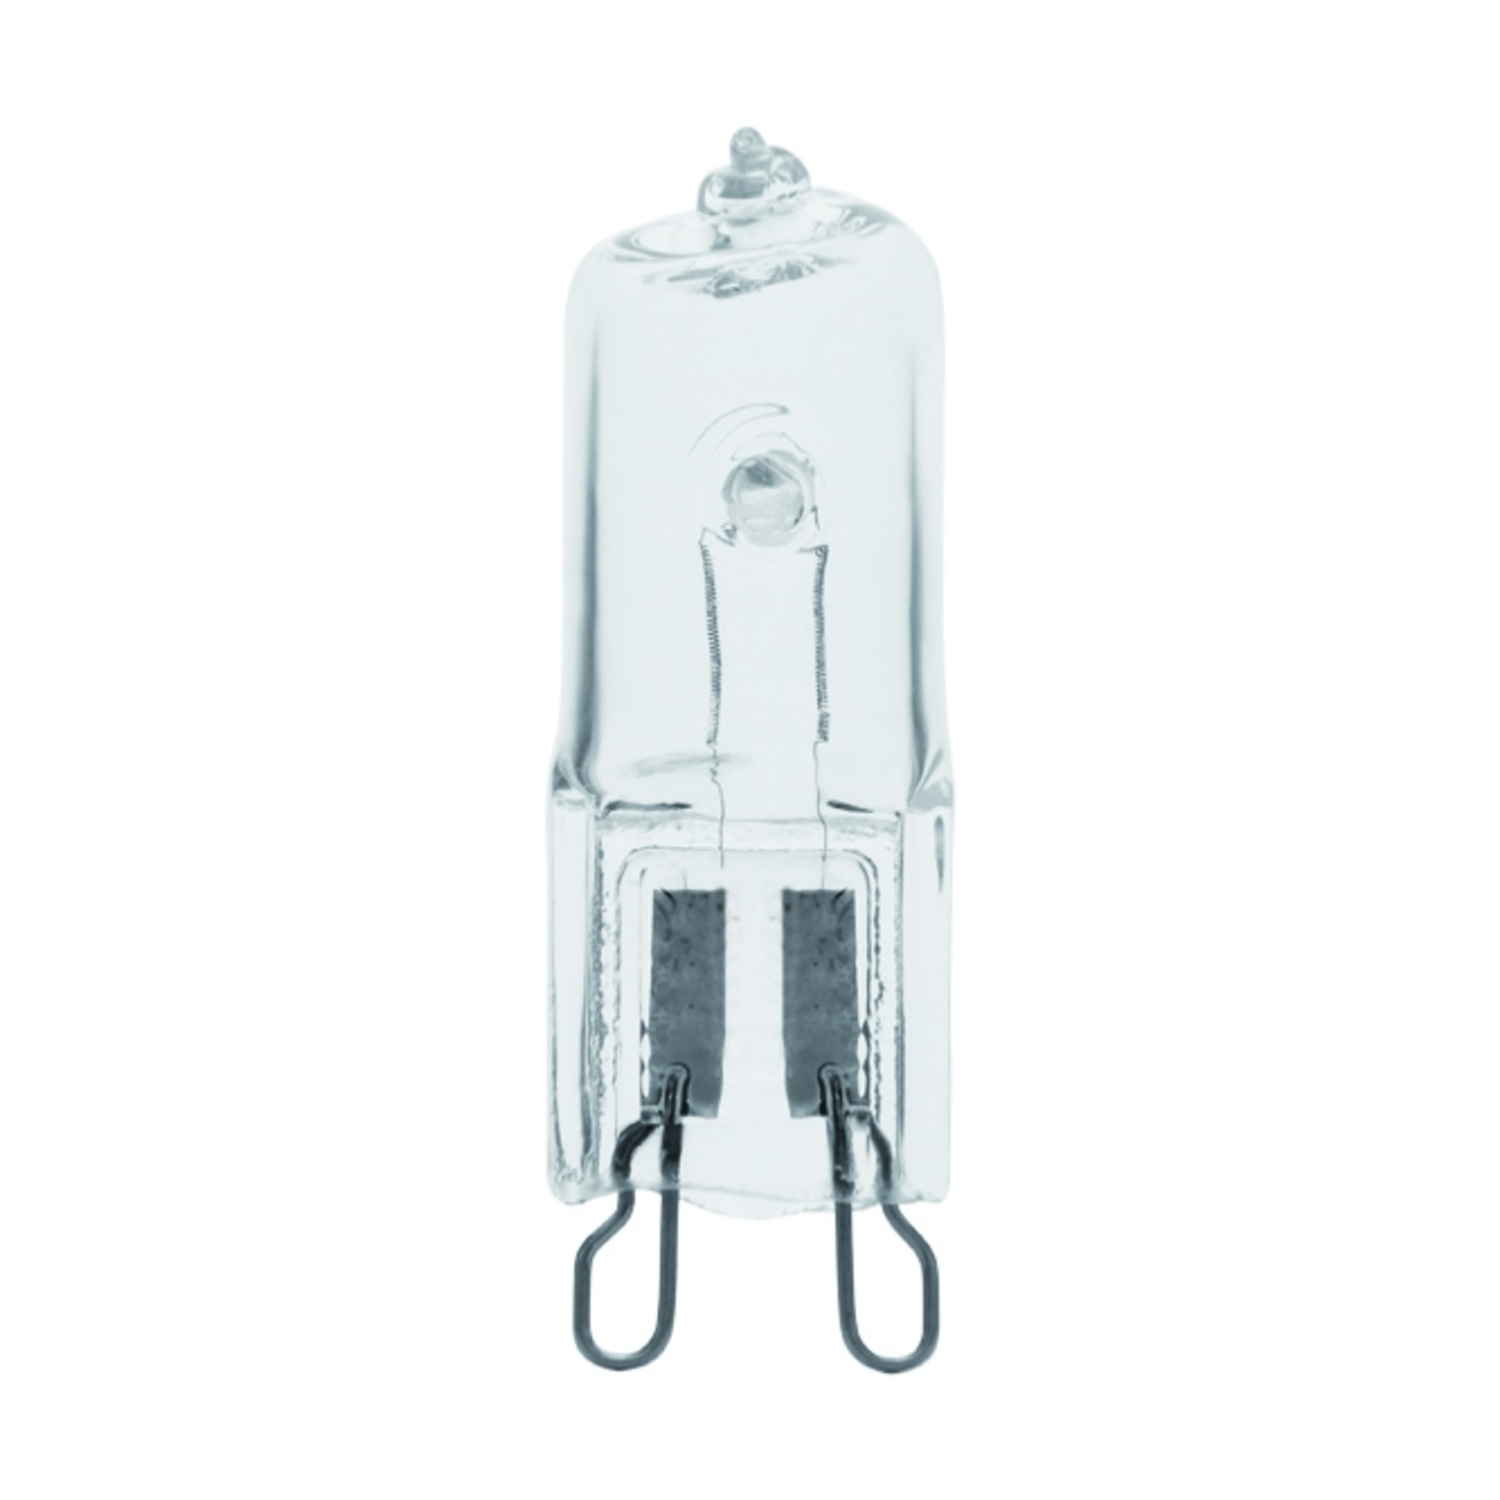 immagine del prodotto lampadina alogena eco star trasparente G9 CE bianco caldo 60 watt 220-240 volt 2000 ore 1 pezzo kan 18423